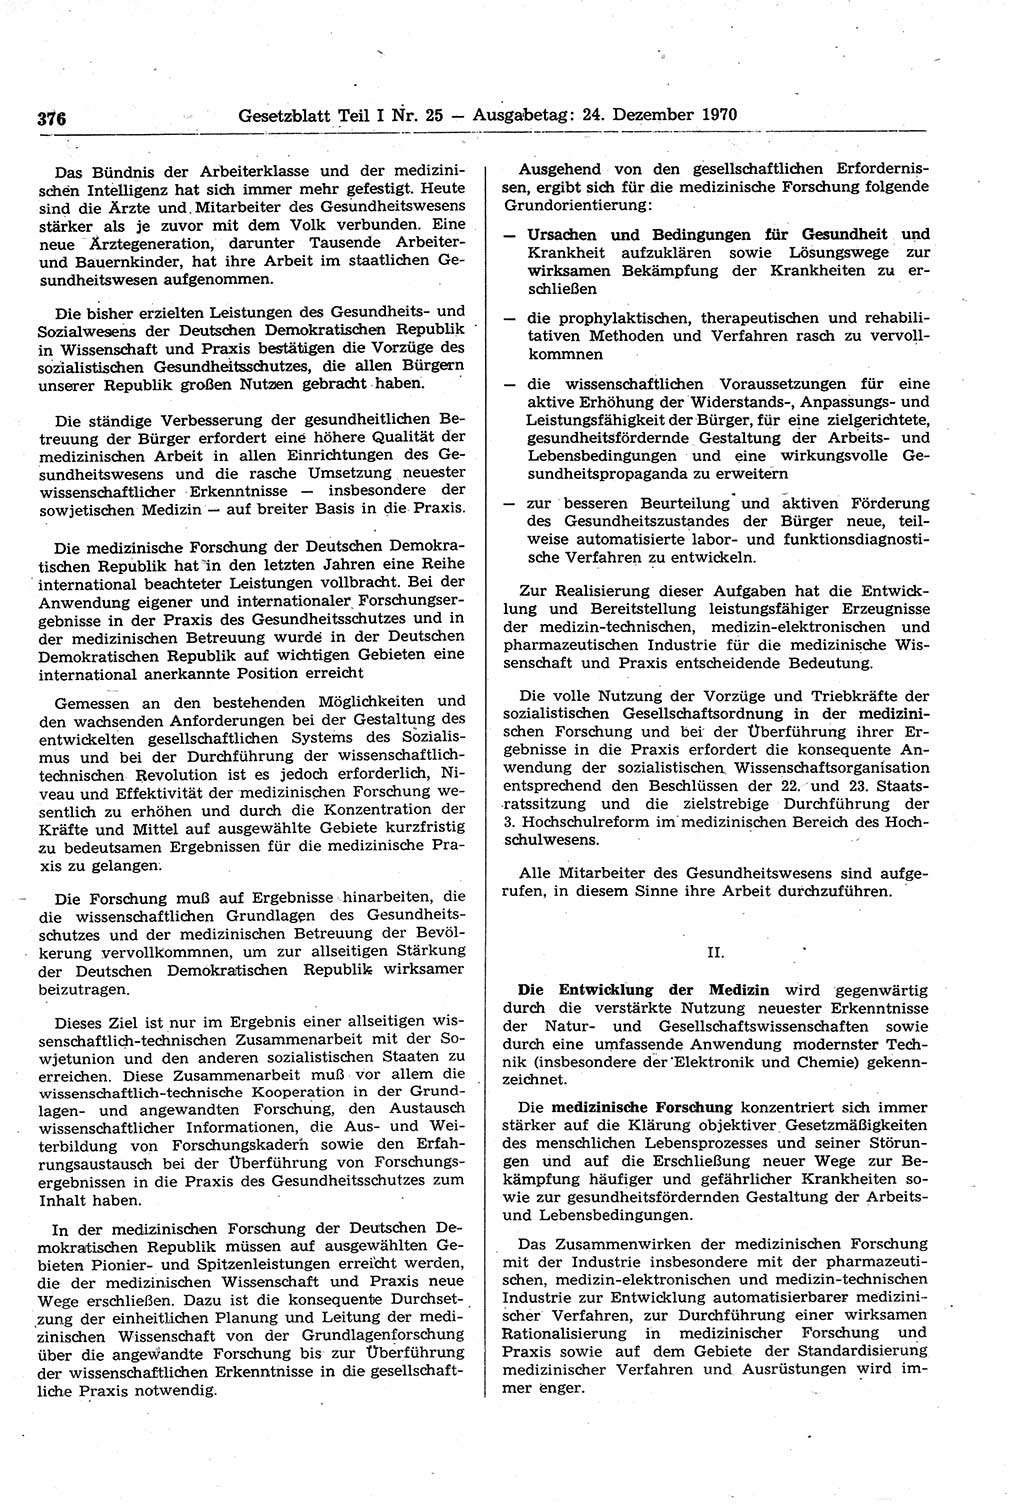 Gesetzblatt (GBl.) der Deutschen Demokratischen Republik (DDR) Teil Ⅰ 1970, Seite 376 (GBl. DDR Ⅰ 1970, S. 376)